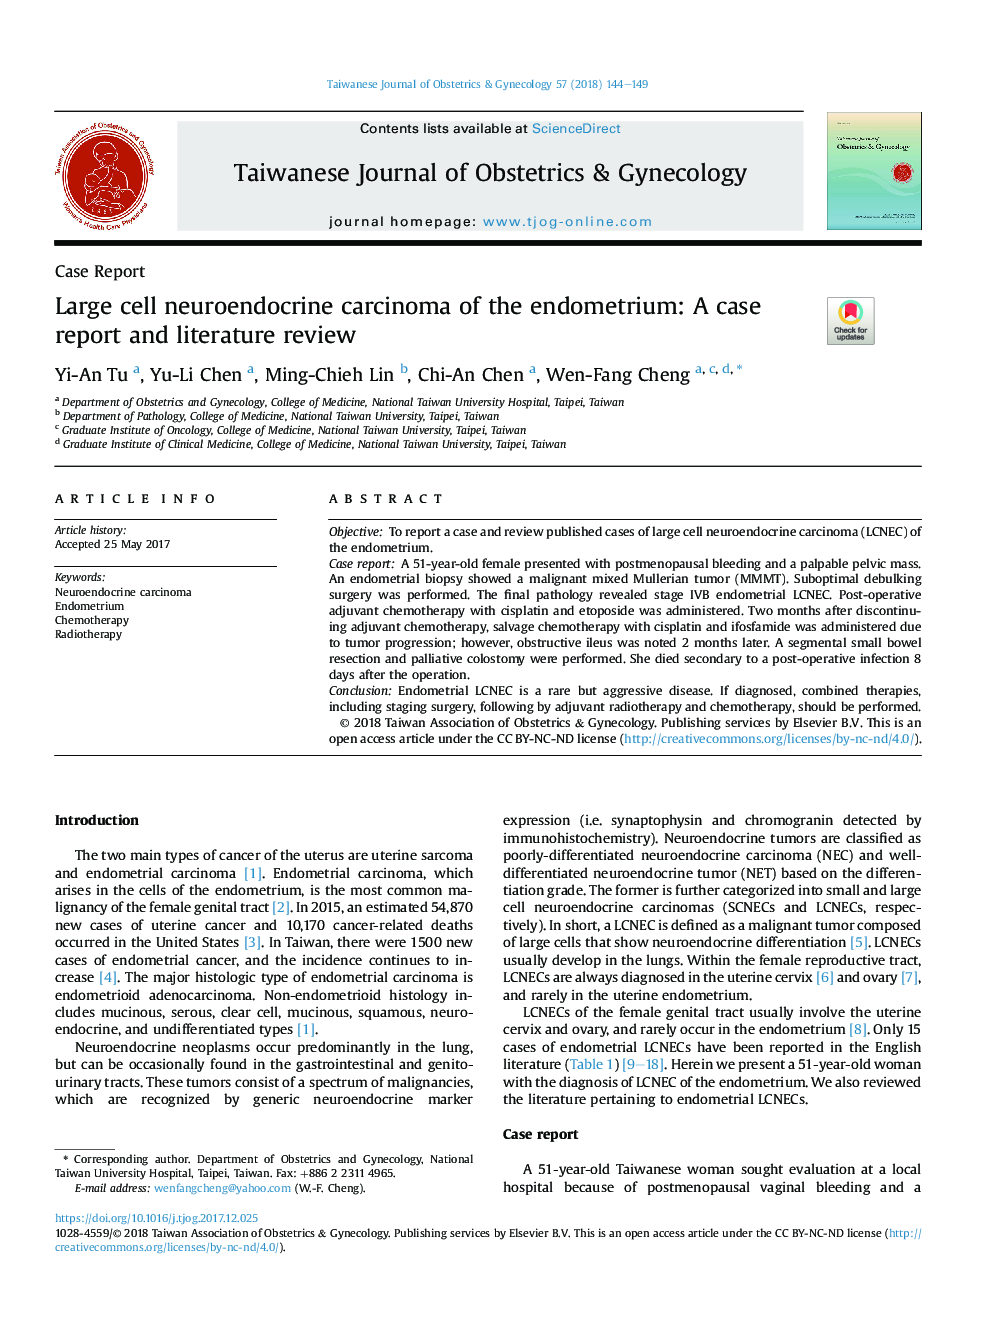 کارسینوم عصبی مرکزی آندومتر: گزارش مورد و بررسی ادبیات 